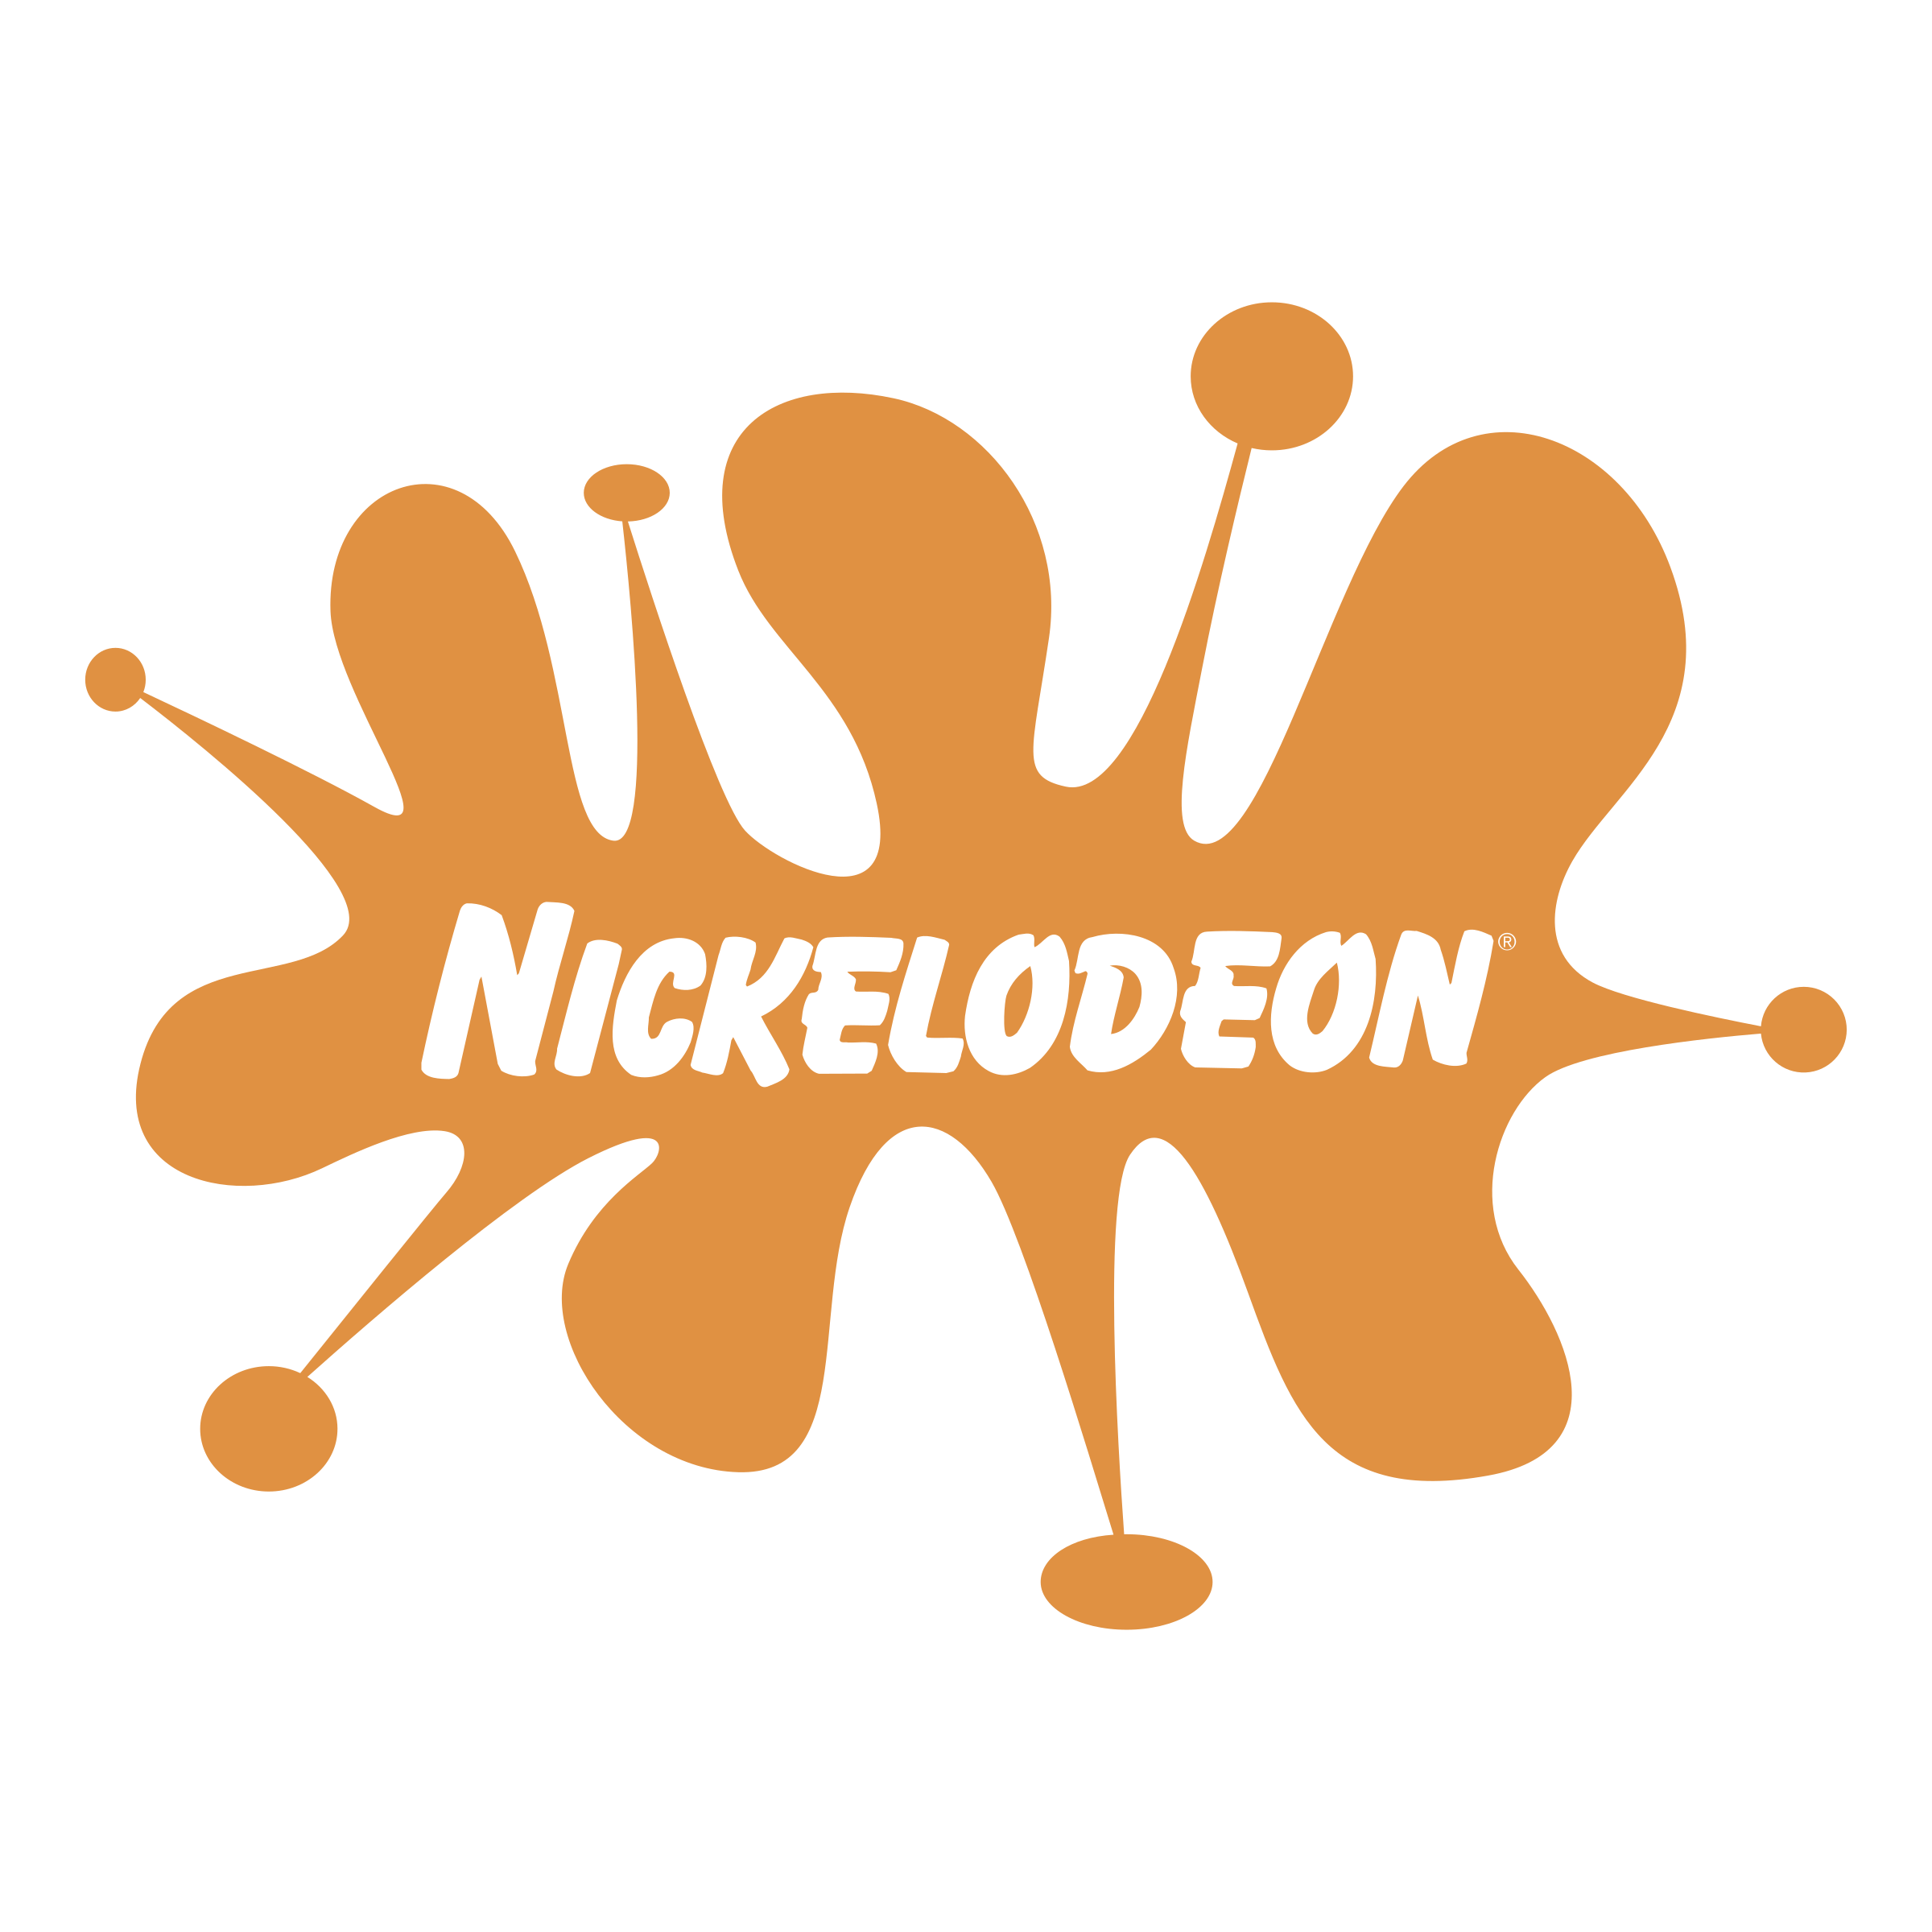 Nickelodeon - детско-подростковый телевизионный канал